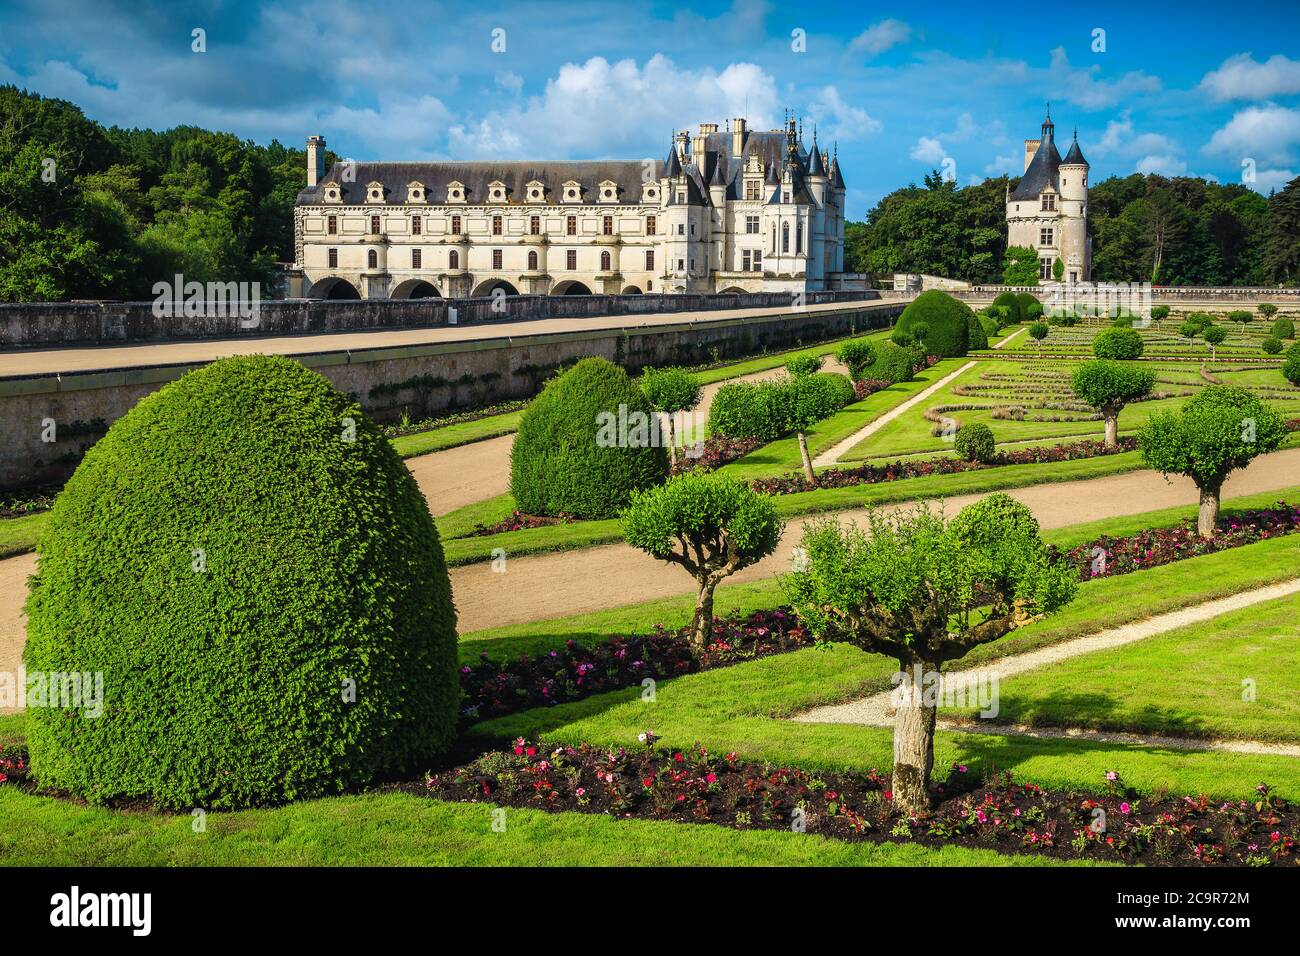 Magnifique jardin ornemental ordonné avec des allées et pittoresque château de Chenonceau en arrière-plan, vallée de la Loire, France, Europe Banque D'Images